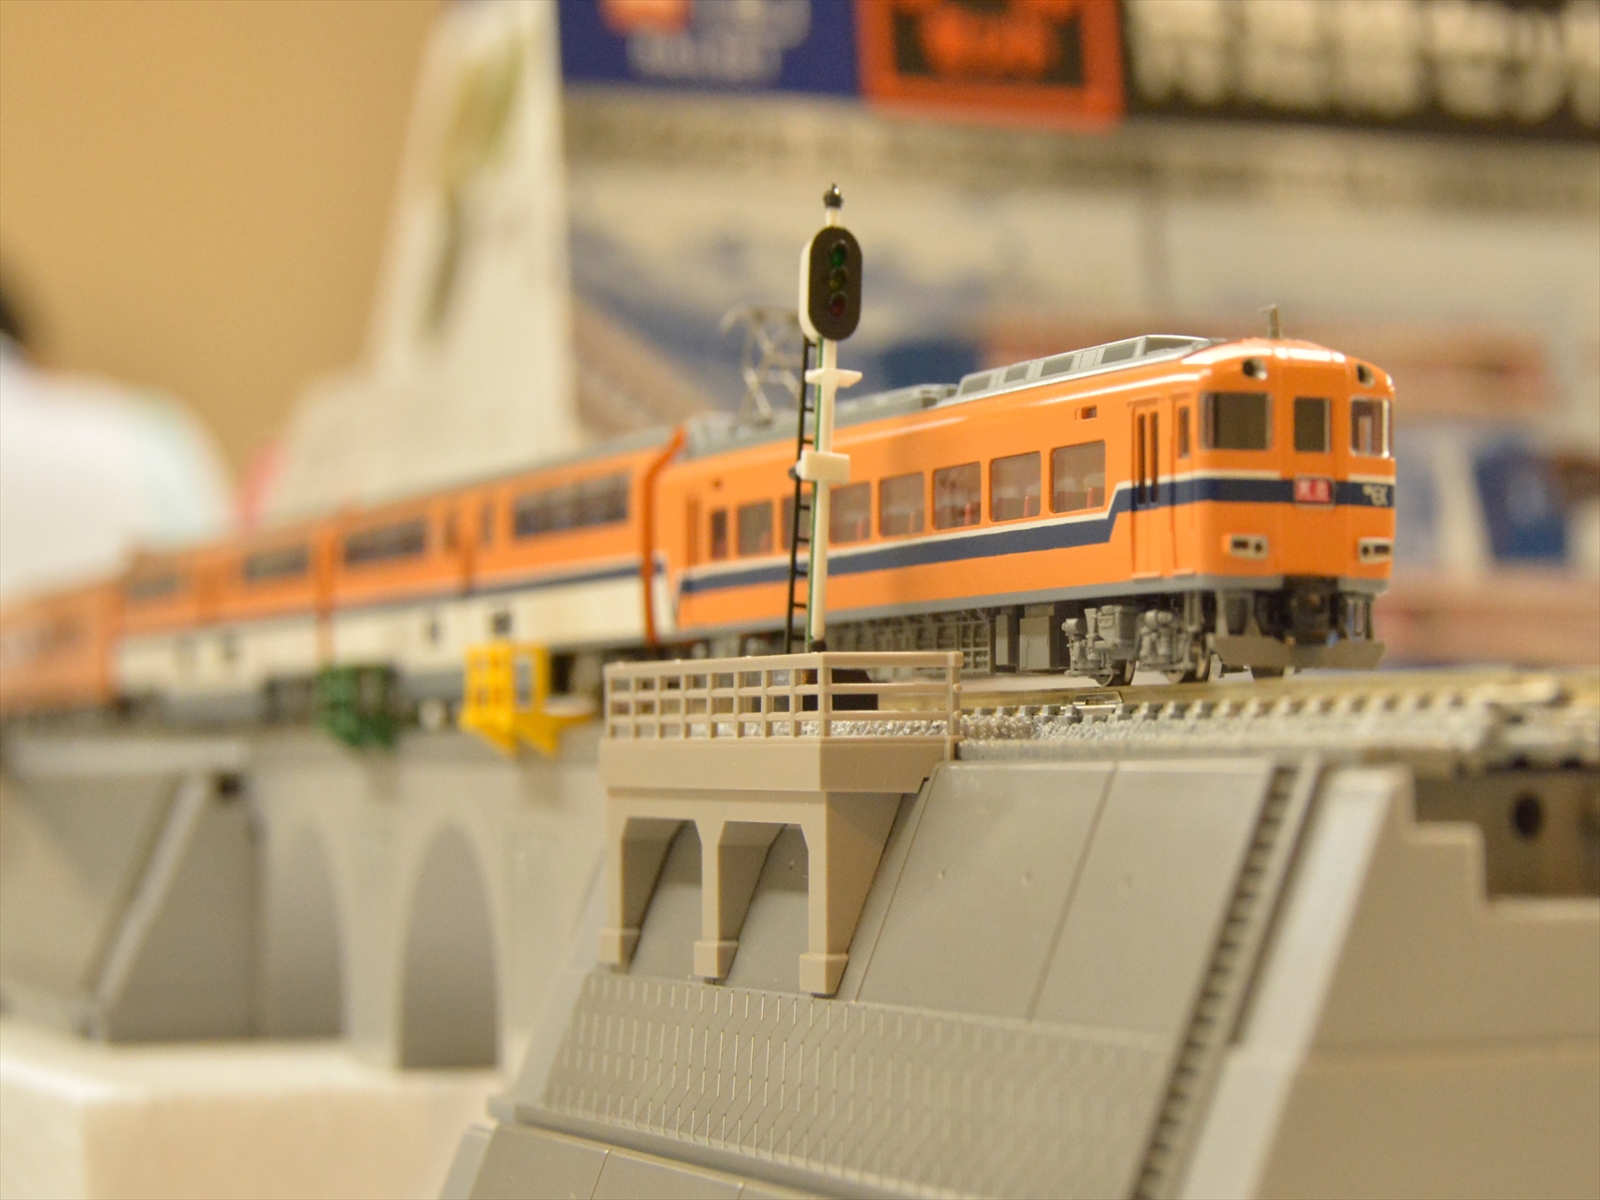 トミックス 92598 近畿日本鉄道30000系ビスタEX 4両セット 鉄道模型 N 